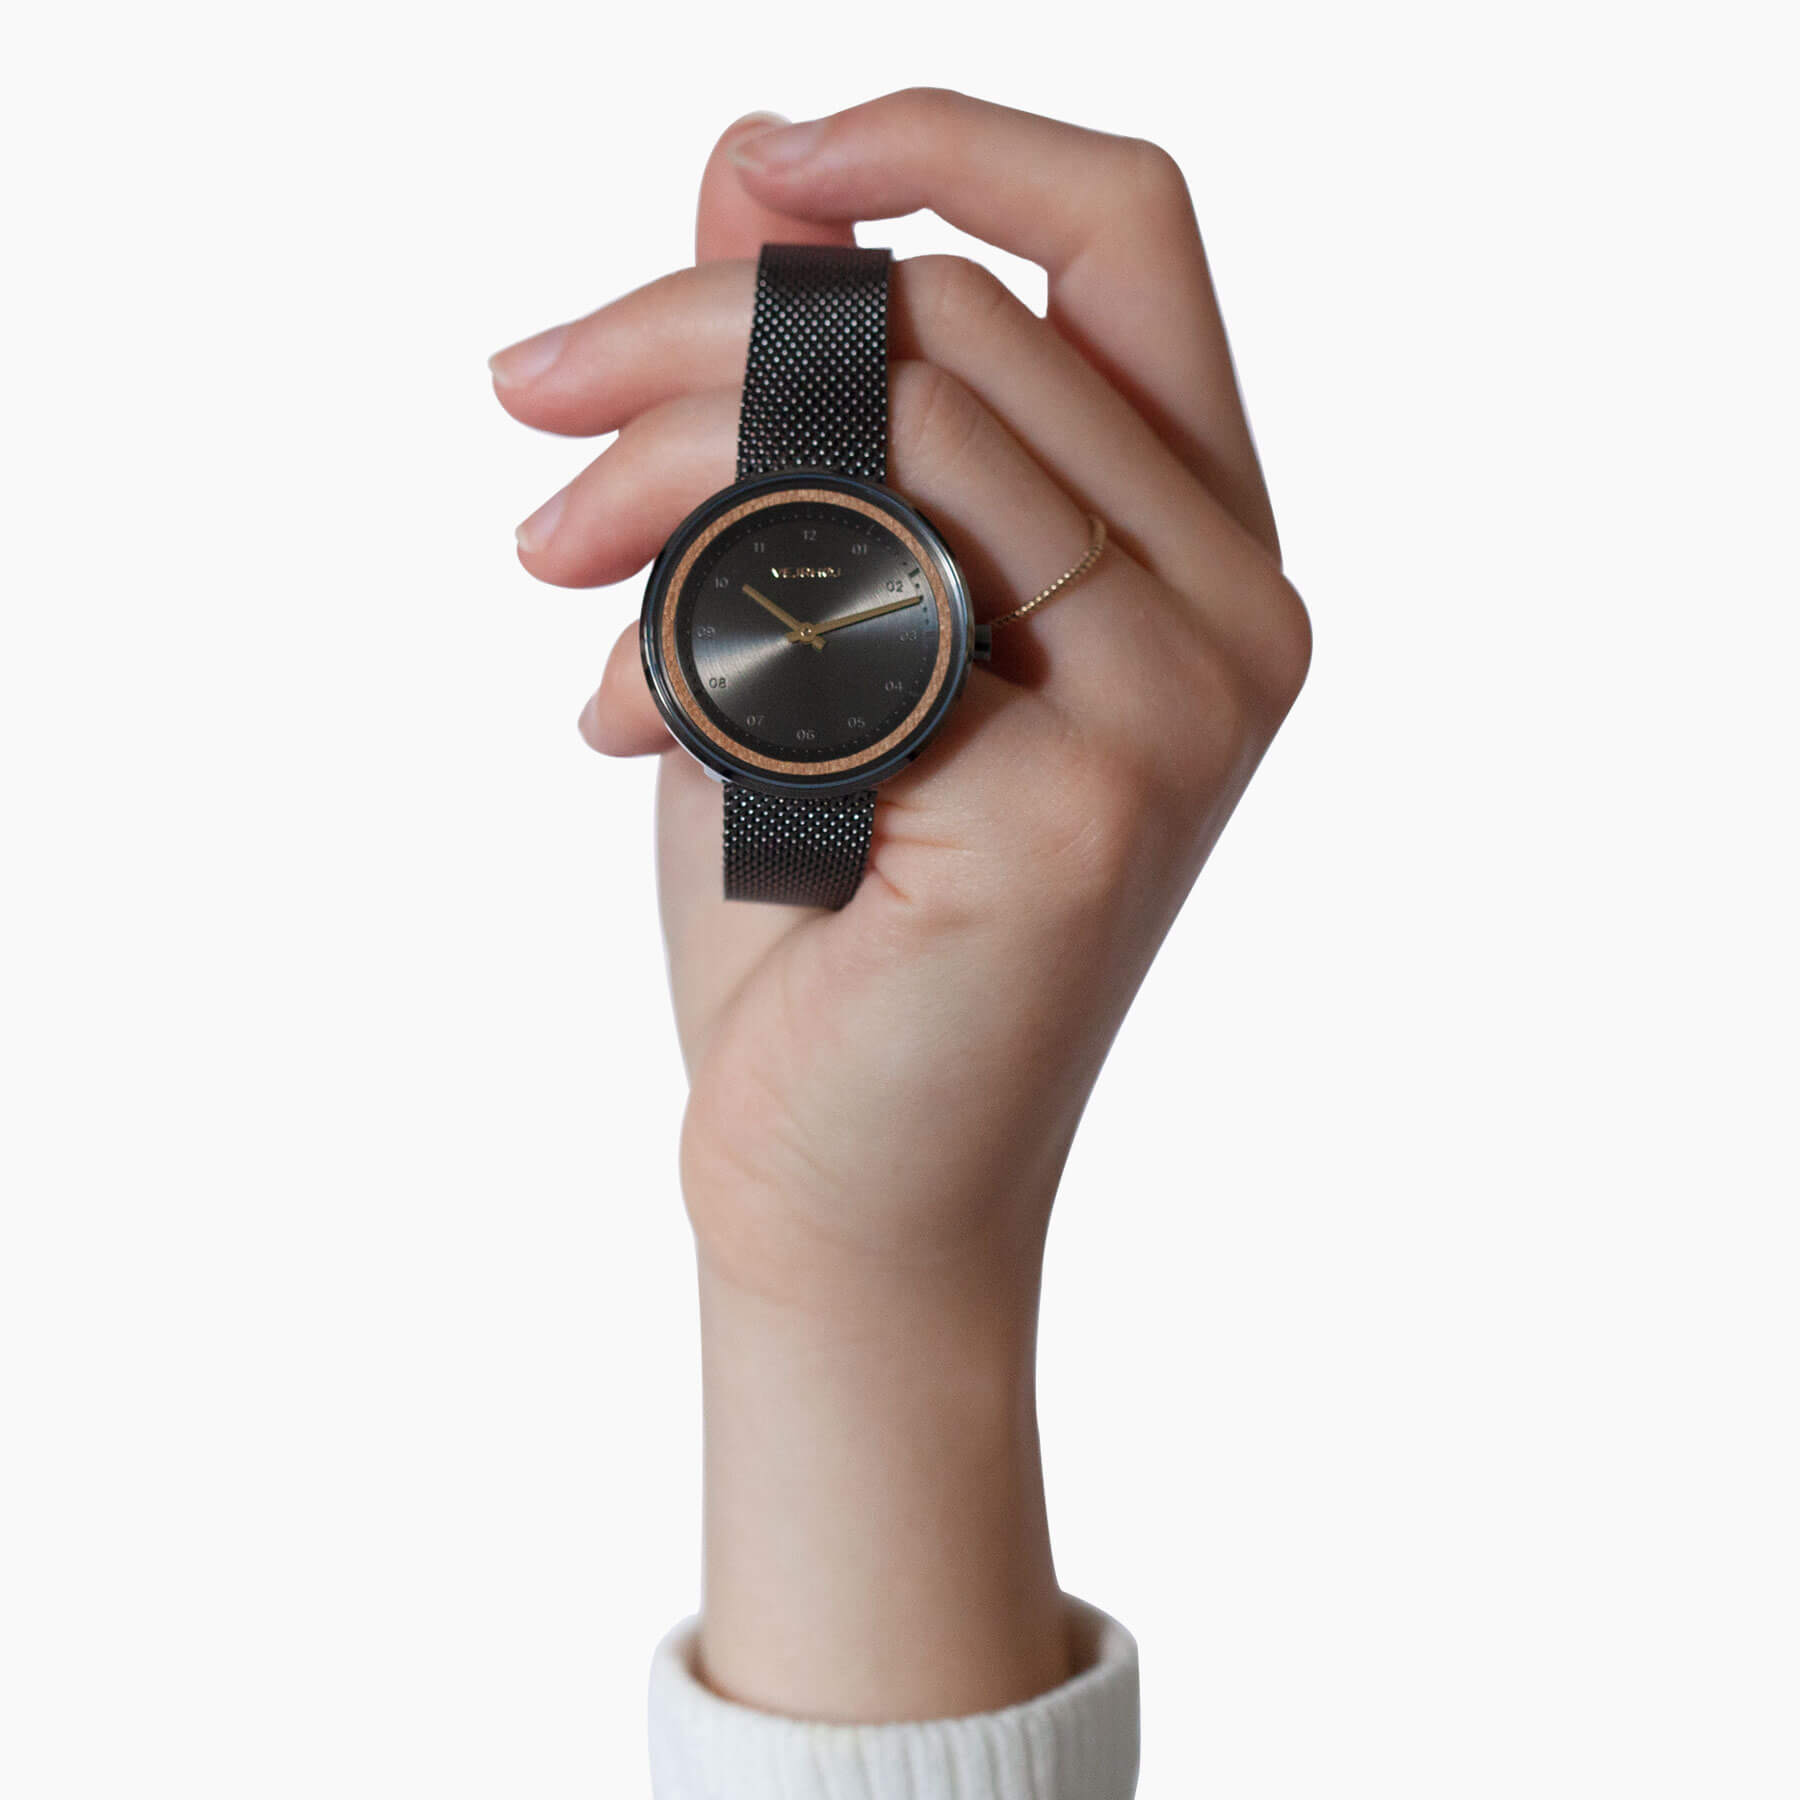  天然の桜の木を使ったVEJRHØJのレディース腕時計Petite | BLACK & GOLD | mesh を手に持った様子